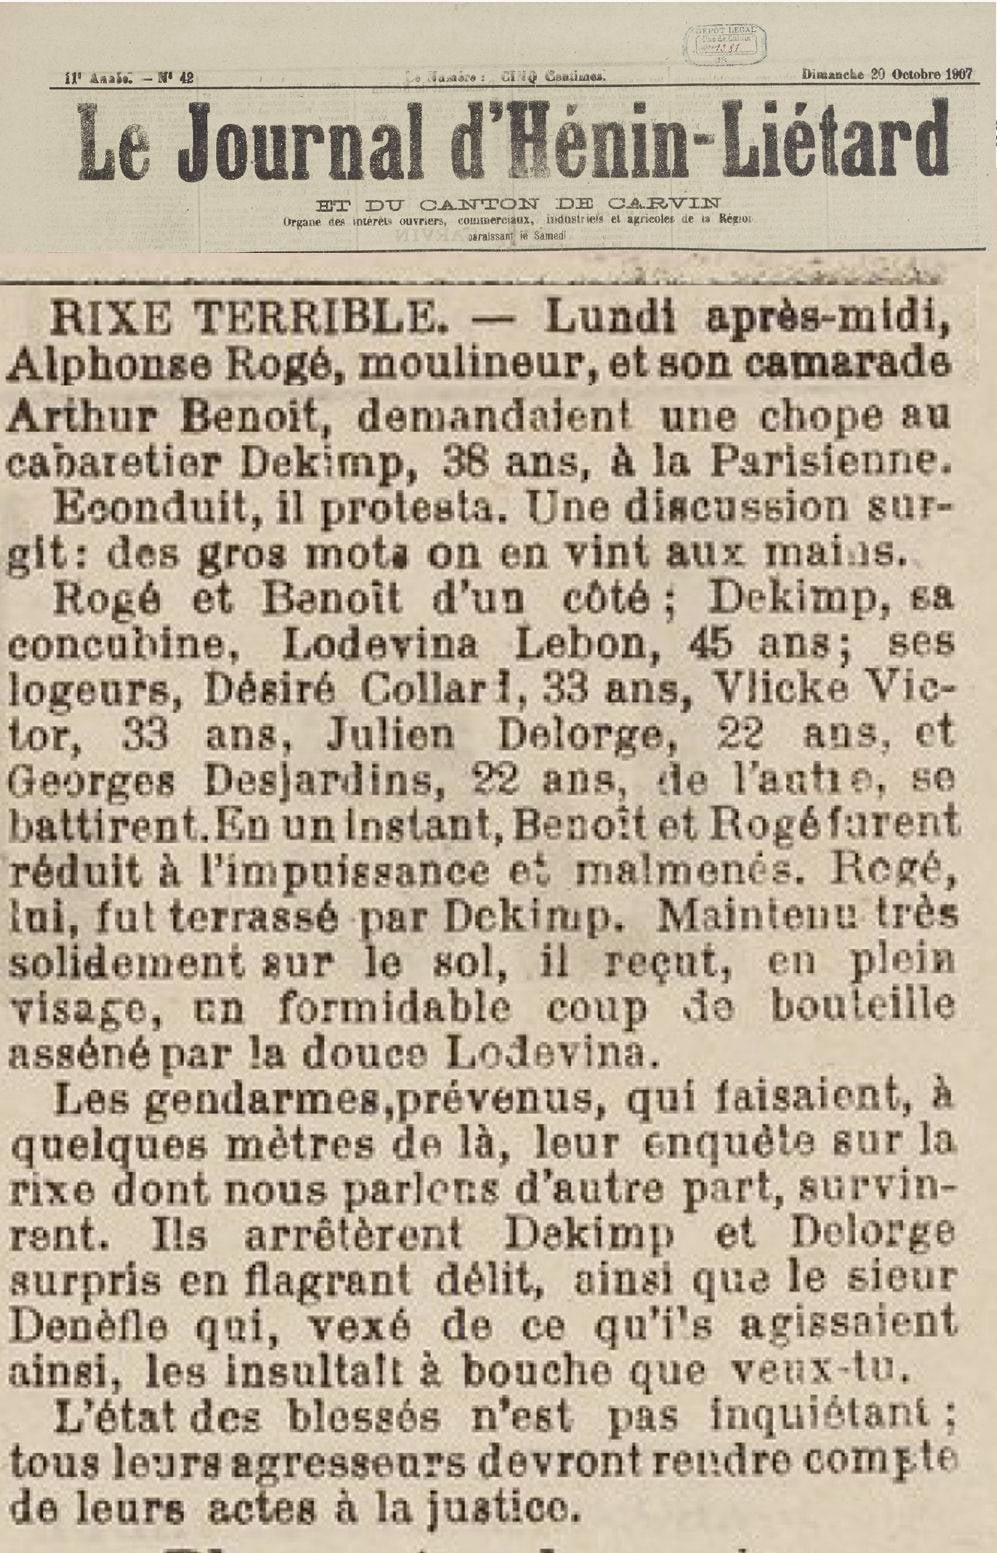 Le Jounal d'Hénin-Liétard 20 oktober 1907